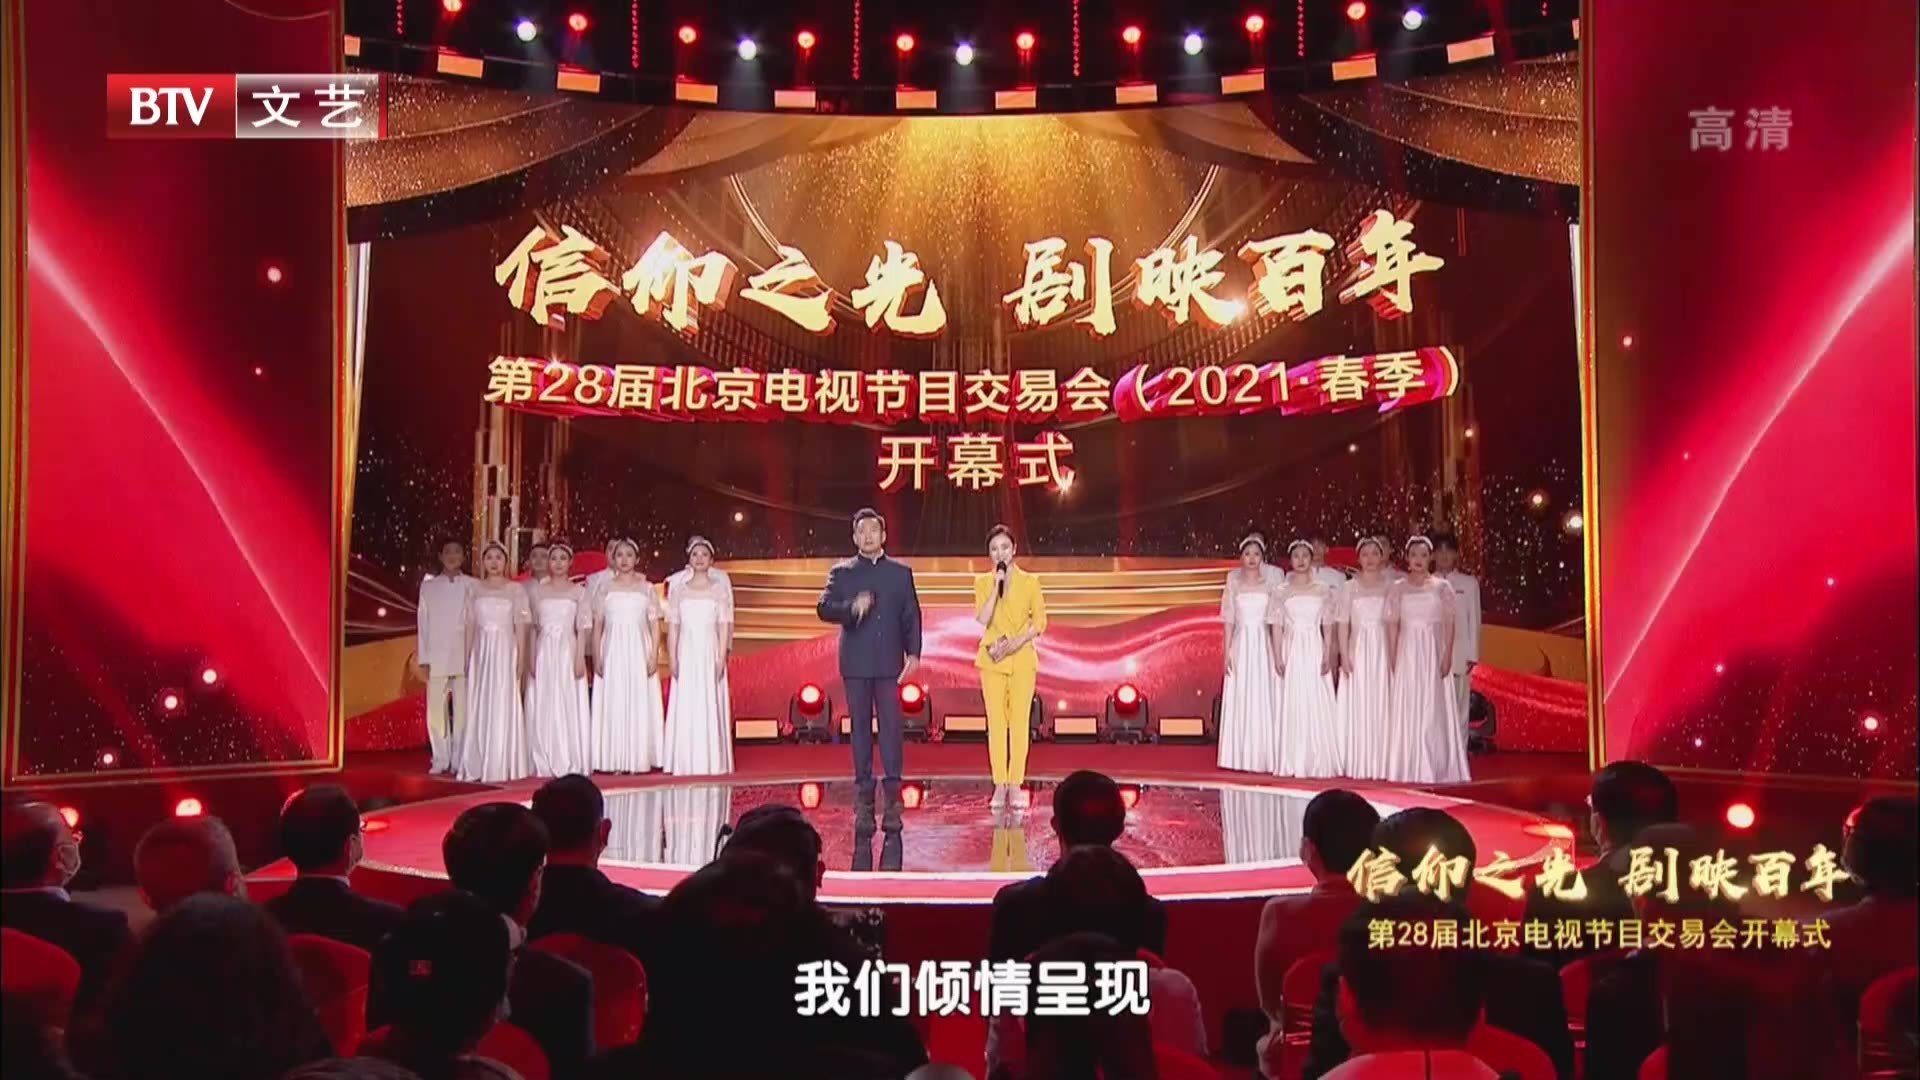 信仰之光 剧映百年——第28届北京电视节目交易会（2021·春季）开幕式